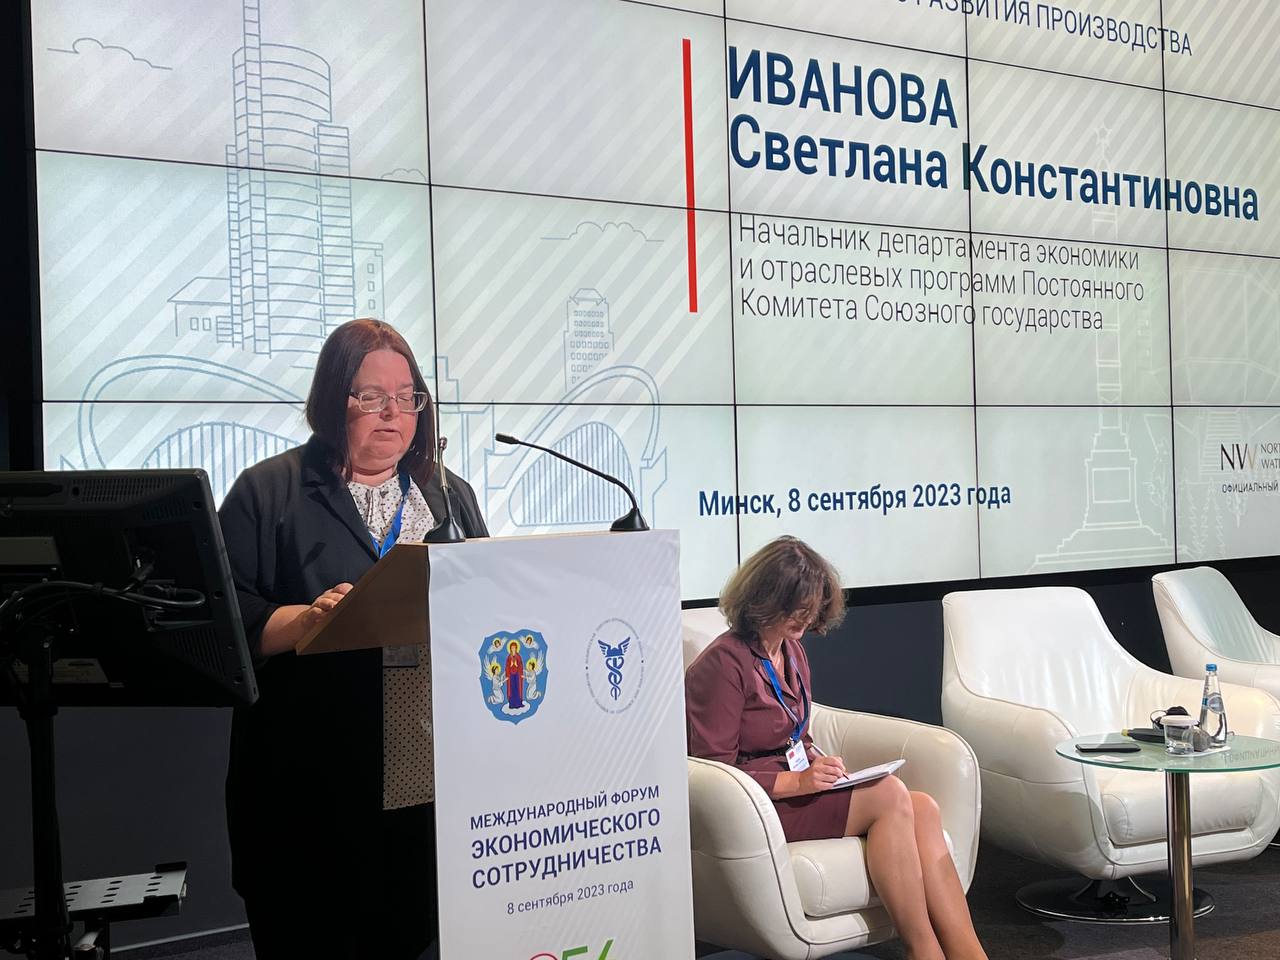 Светлана Иванова: в Союзном государстве сделан большой шаг в углублении экономической интеграции